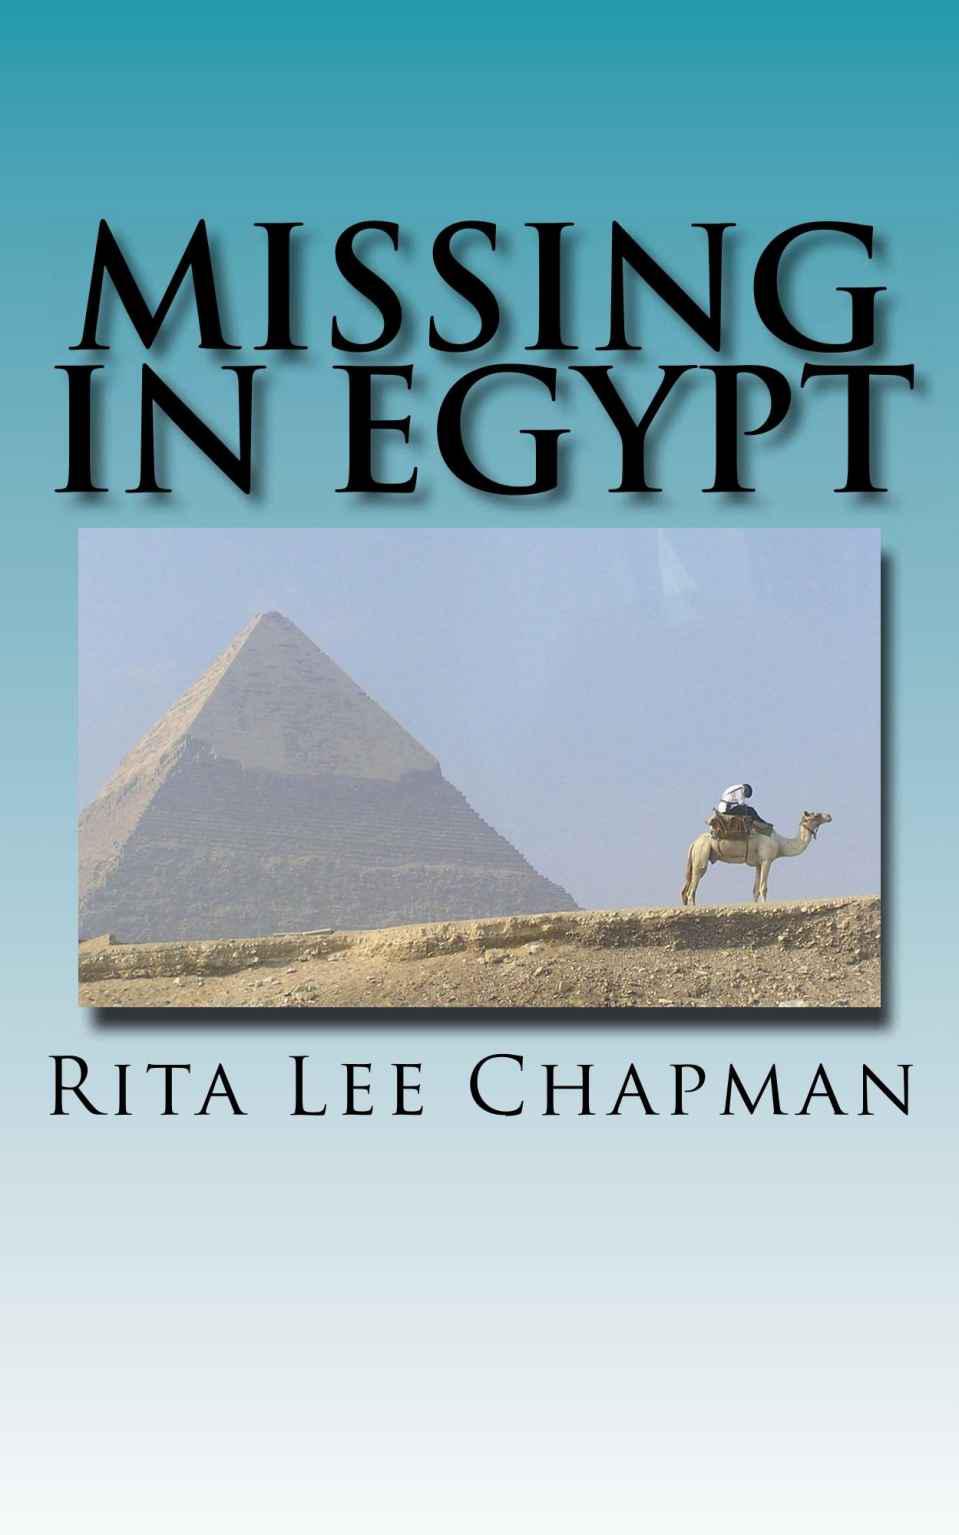 Missing in Egypt by Rita Lee Chapman